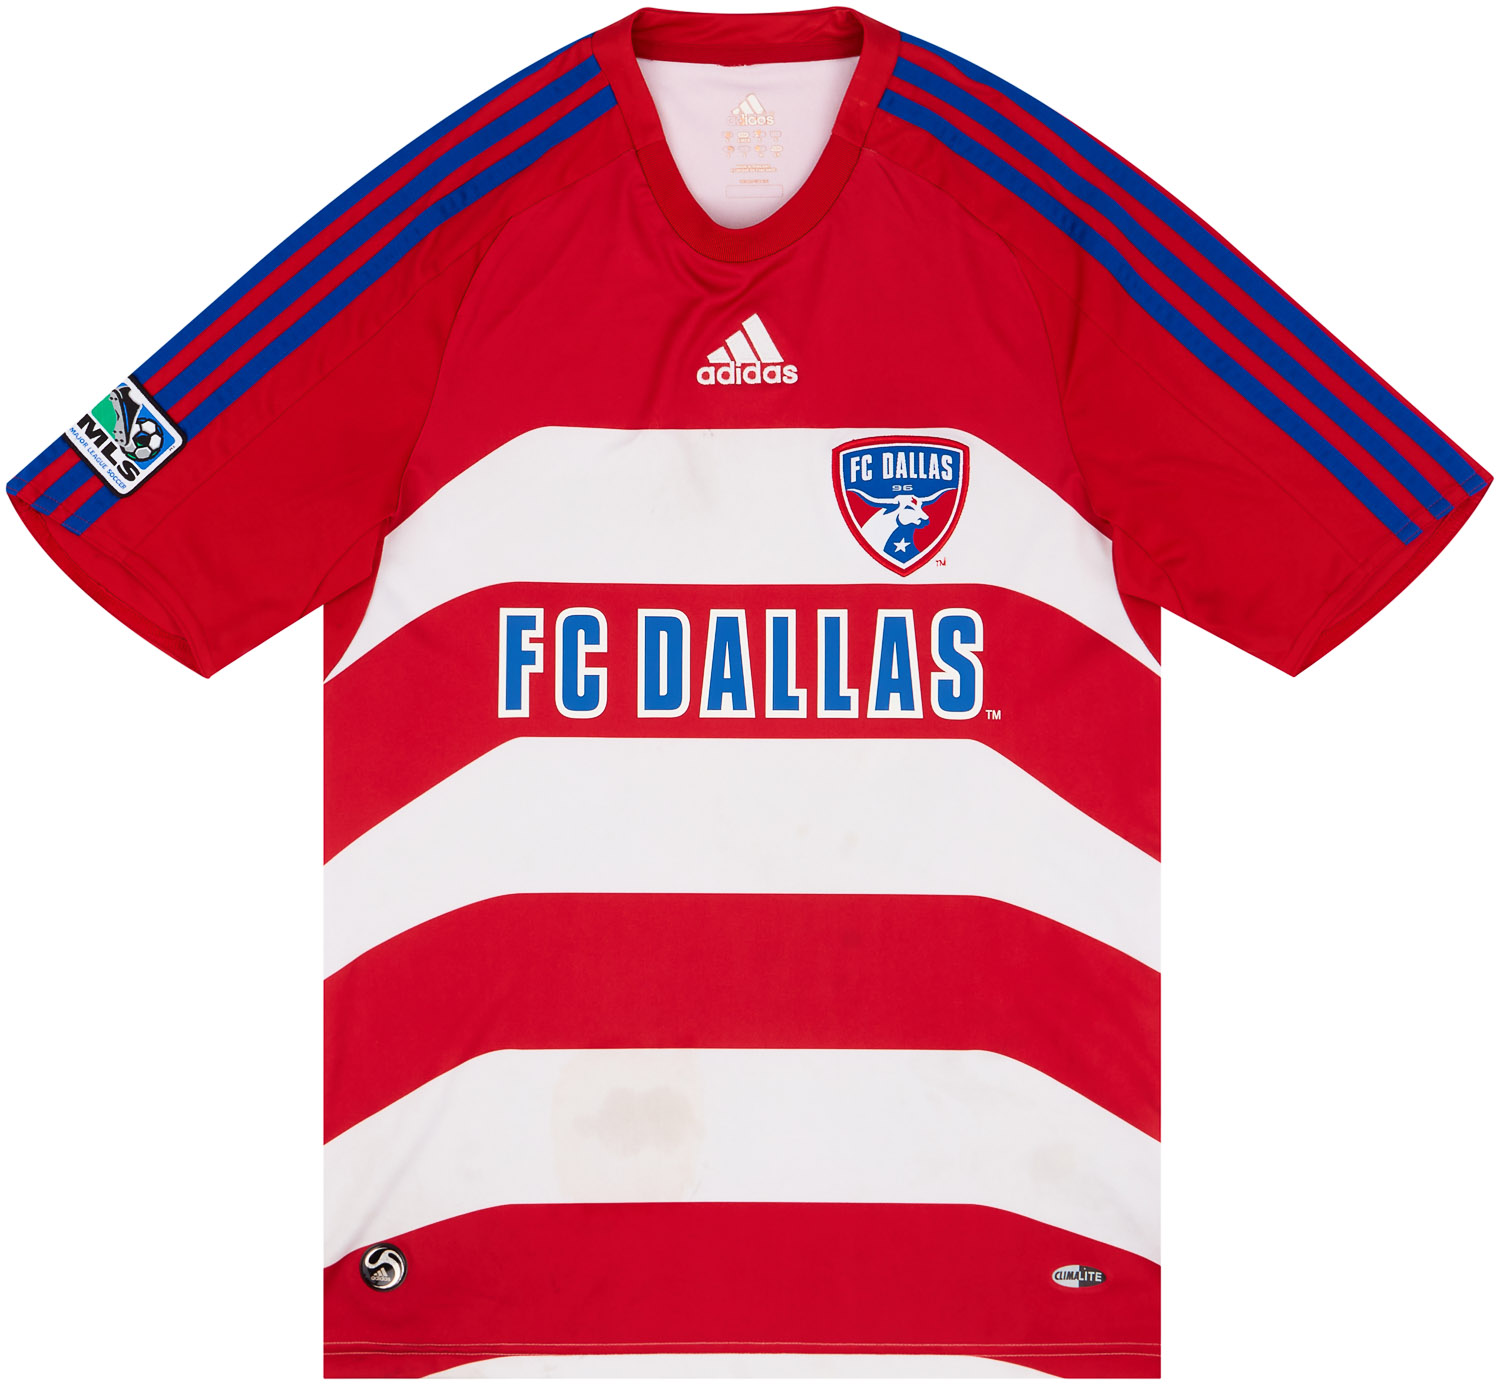 2008 FC Dallas Home Shirt - 5/10 - ()